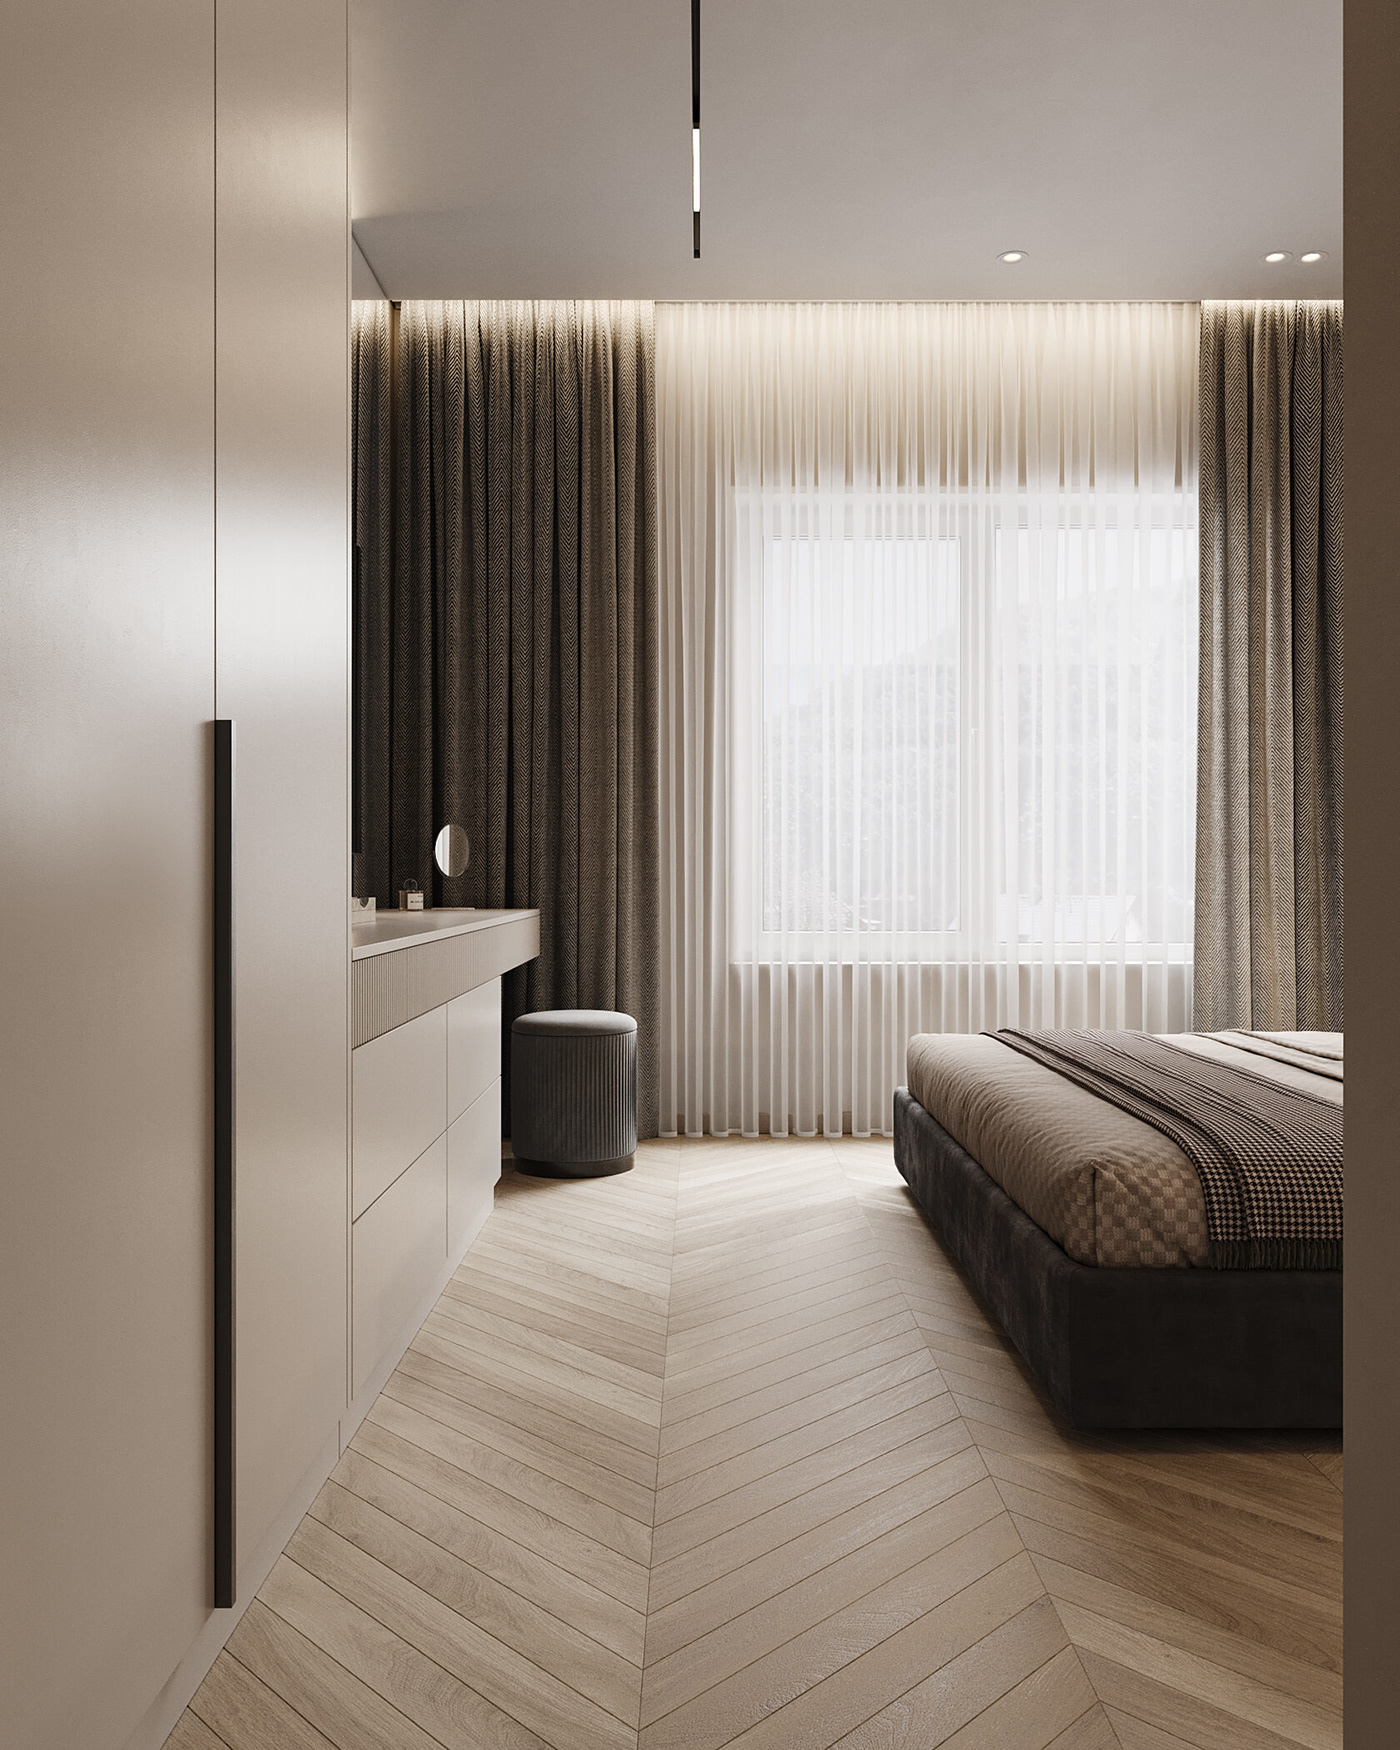 дизайн интерьера интерьер гостиная   спальня детская interior design  visualization 3D modern pink